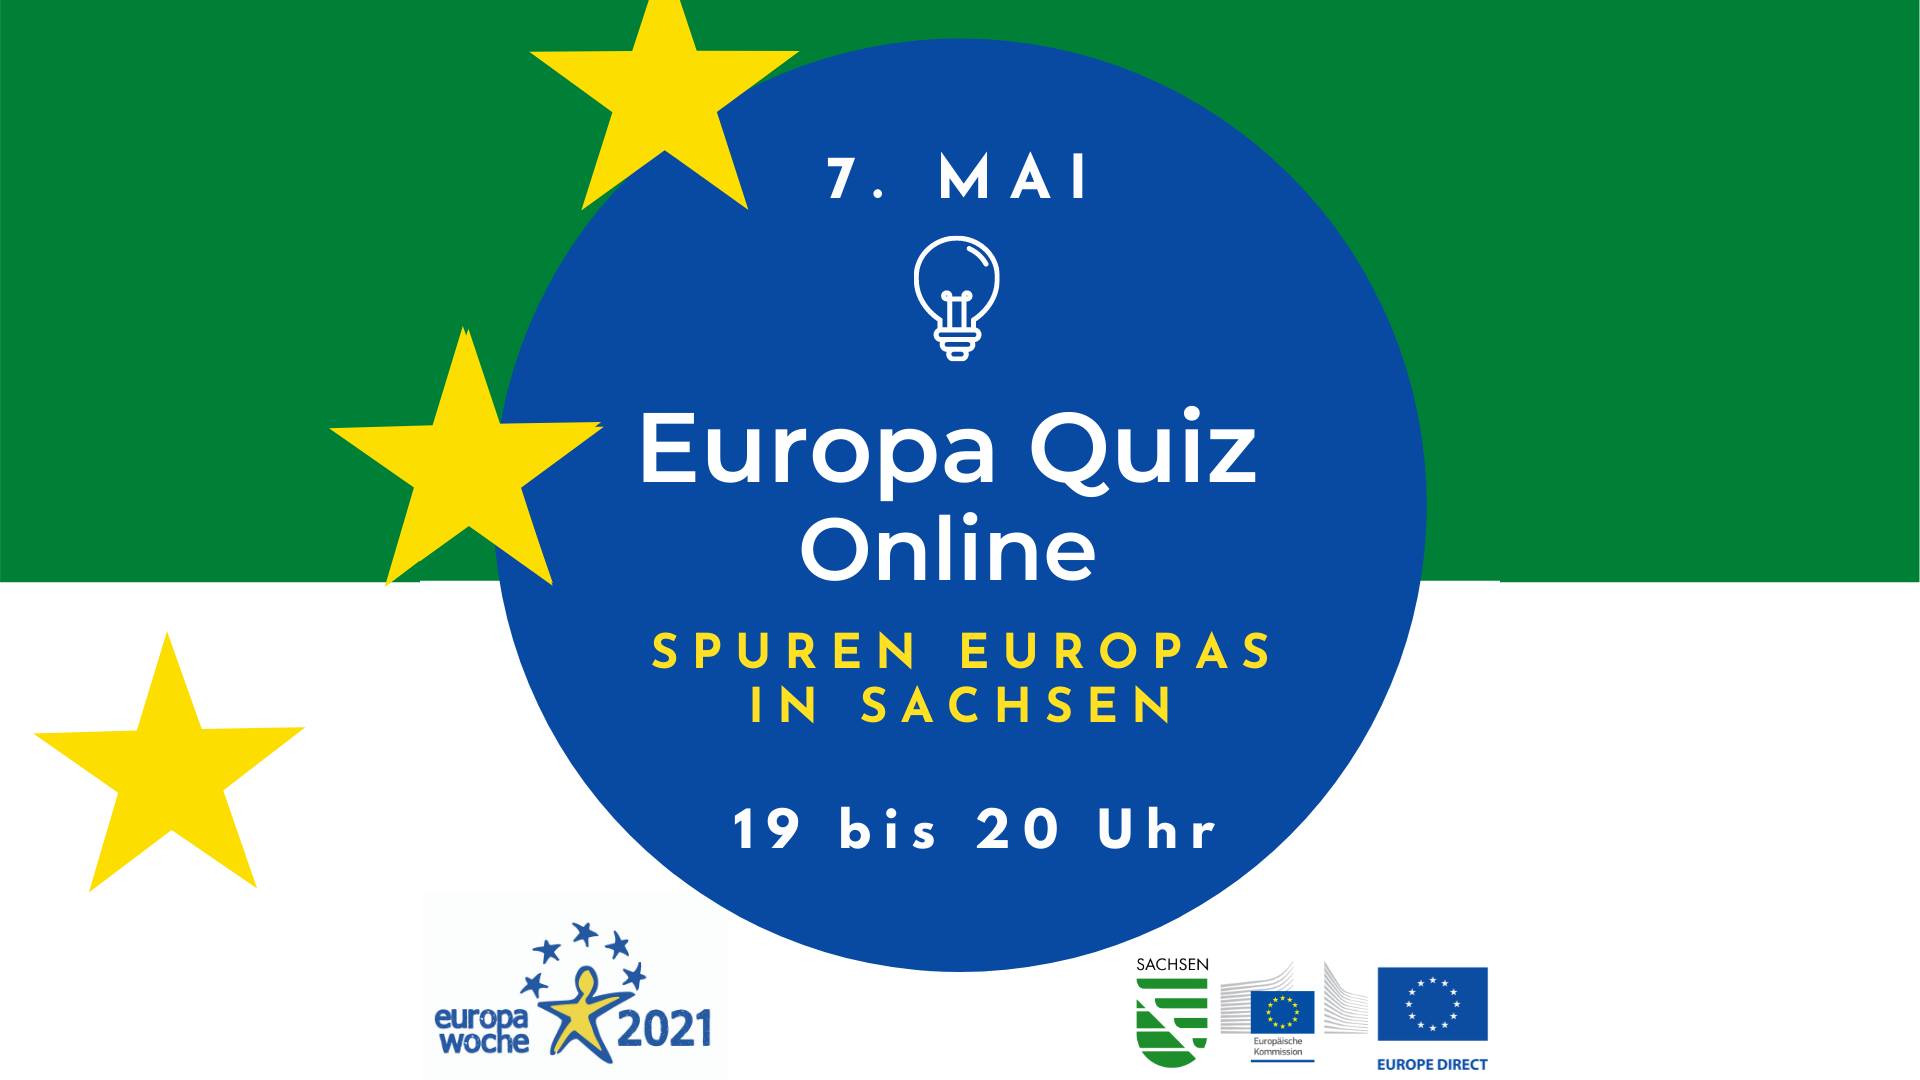 Europa Quiz Online